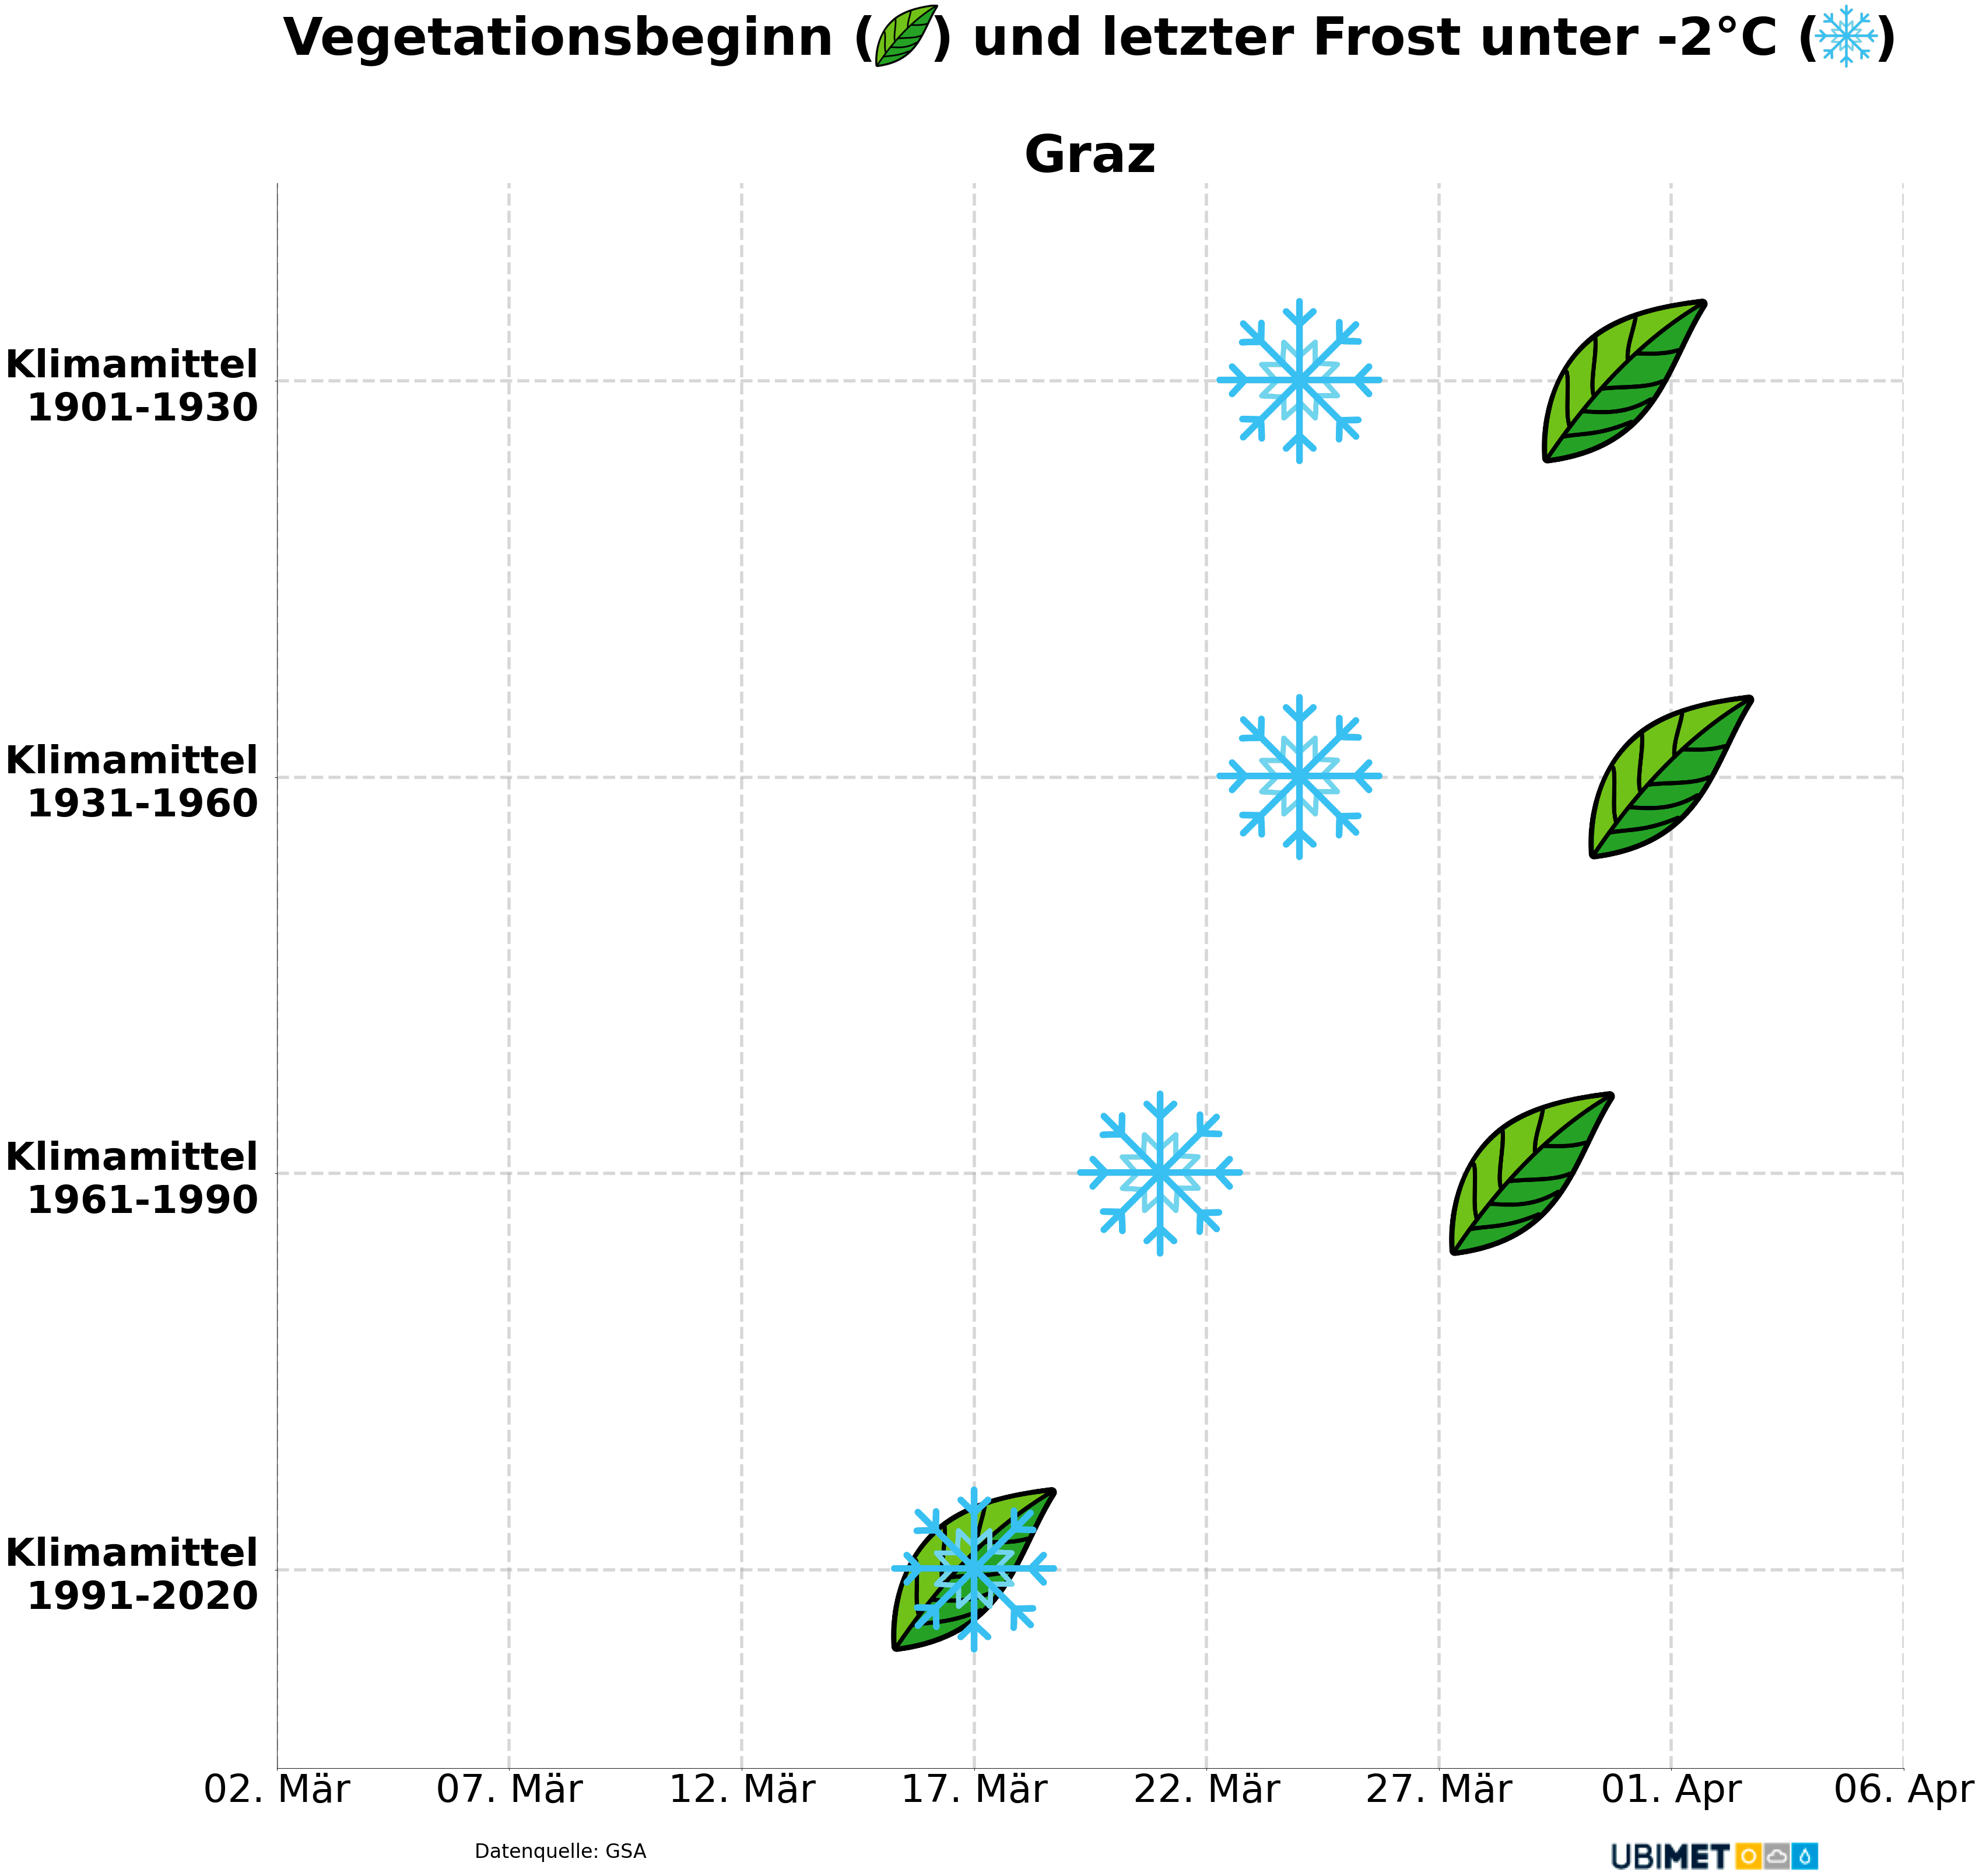 Tag des Vegetationsbeginns (Methode der Wärmesumme) und des letzten Tiefstwerts unter -2 Grad im Frühjahr für Graz - UBIMET mit Daten GSA